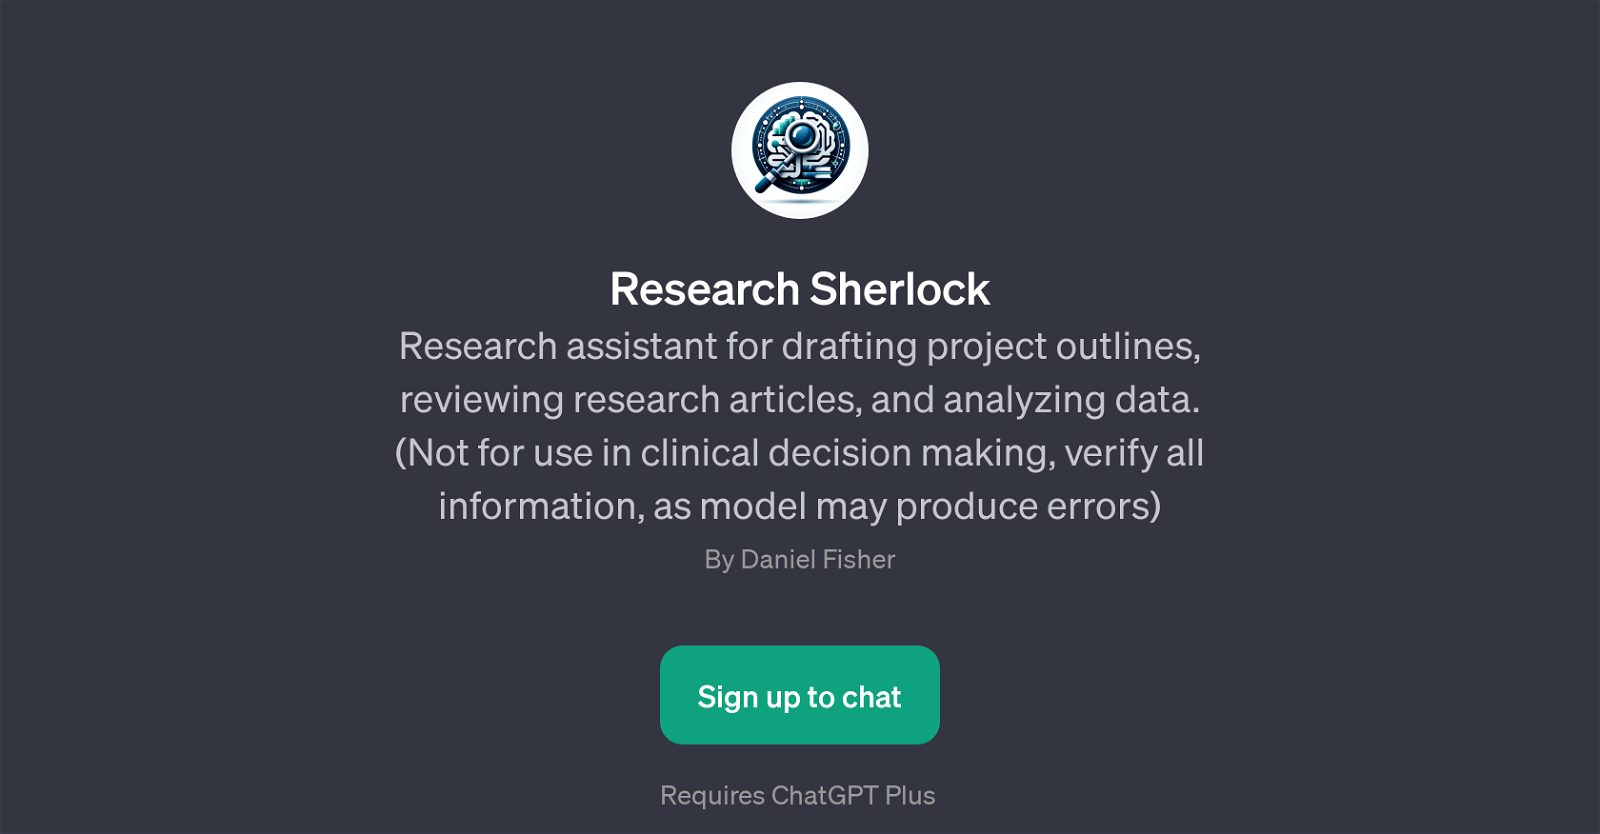 Research Sherlock website